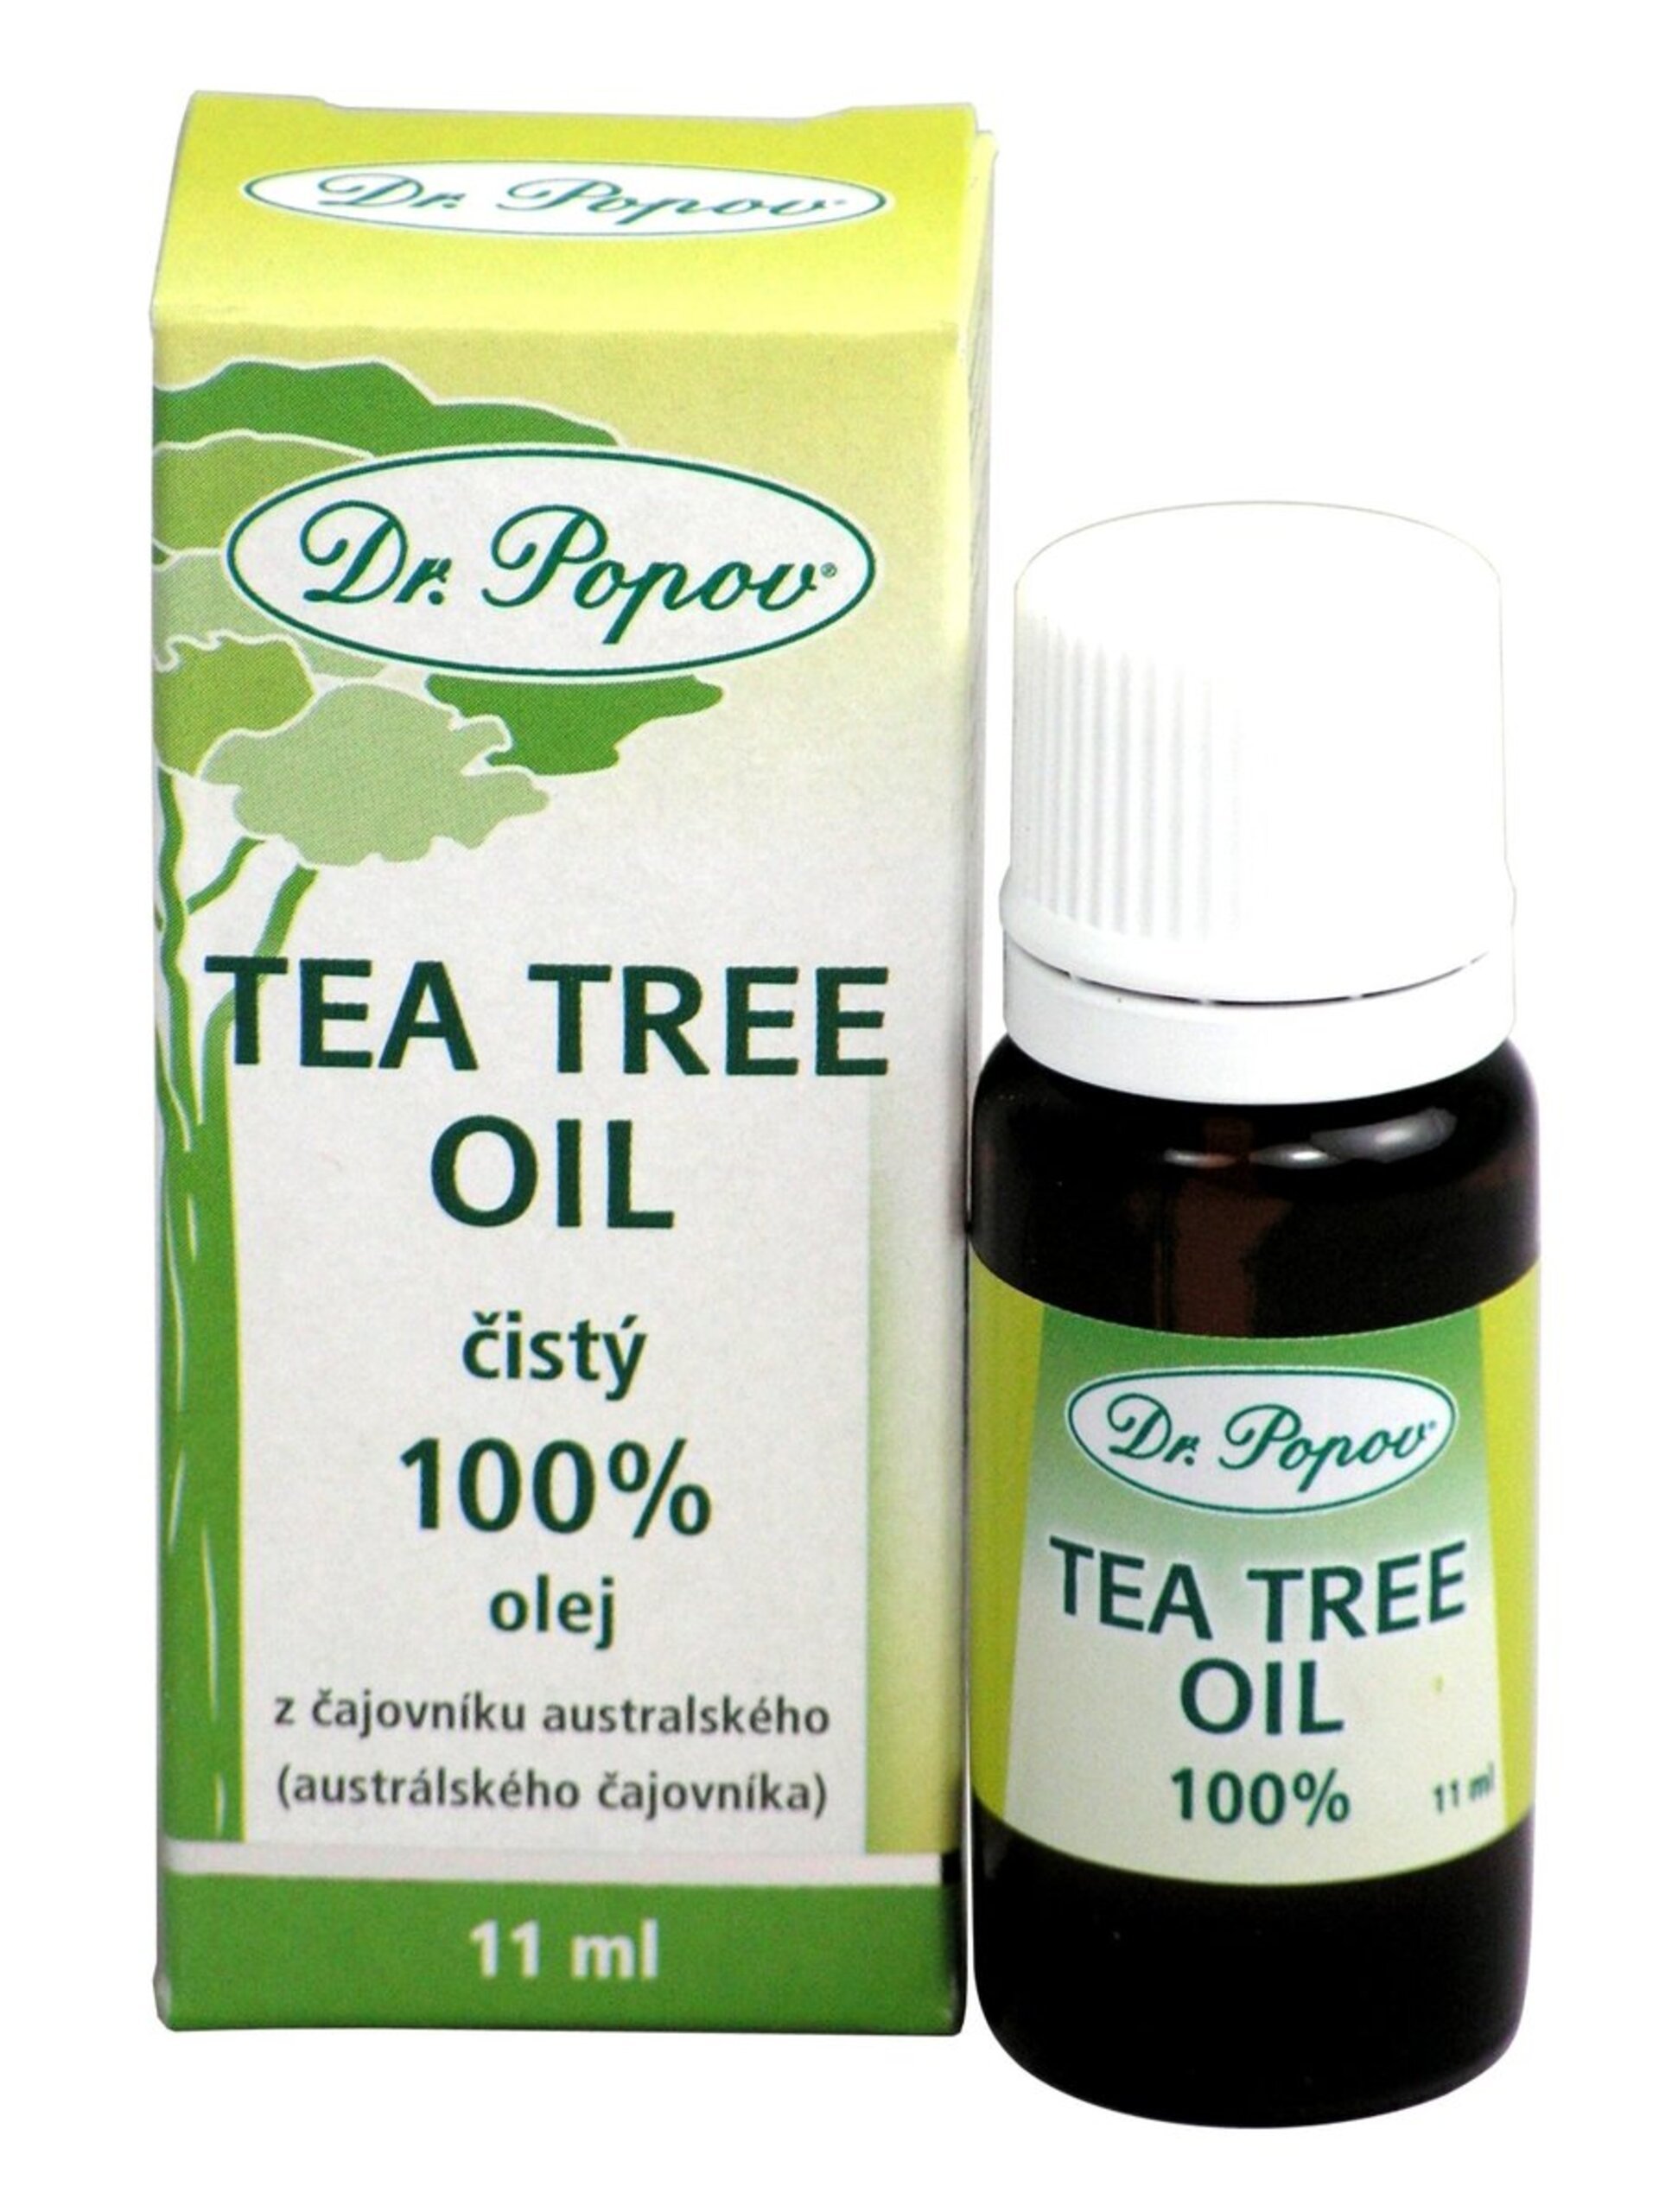 E-shop Dr. Popov Tea Tree Oil 100% 11 ml